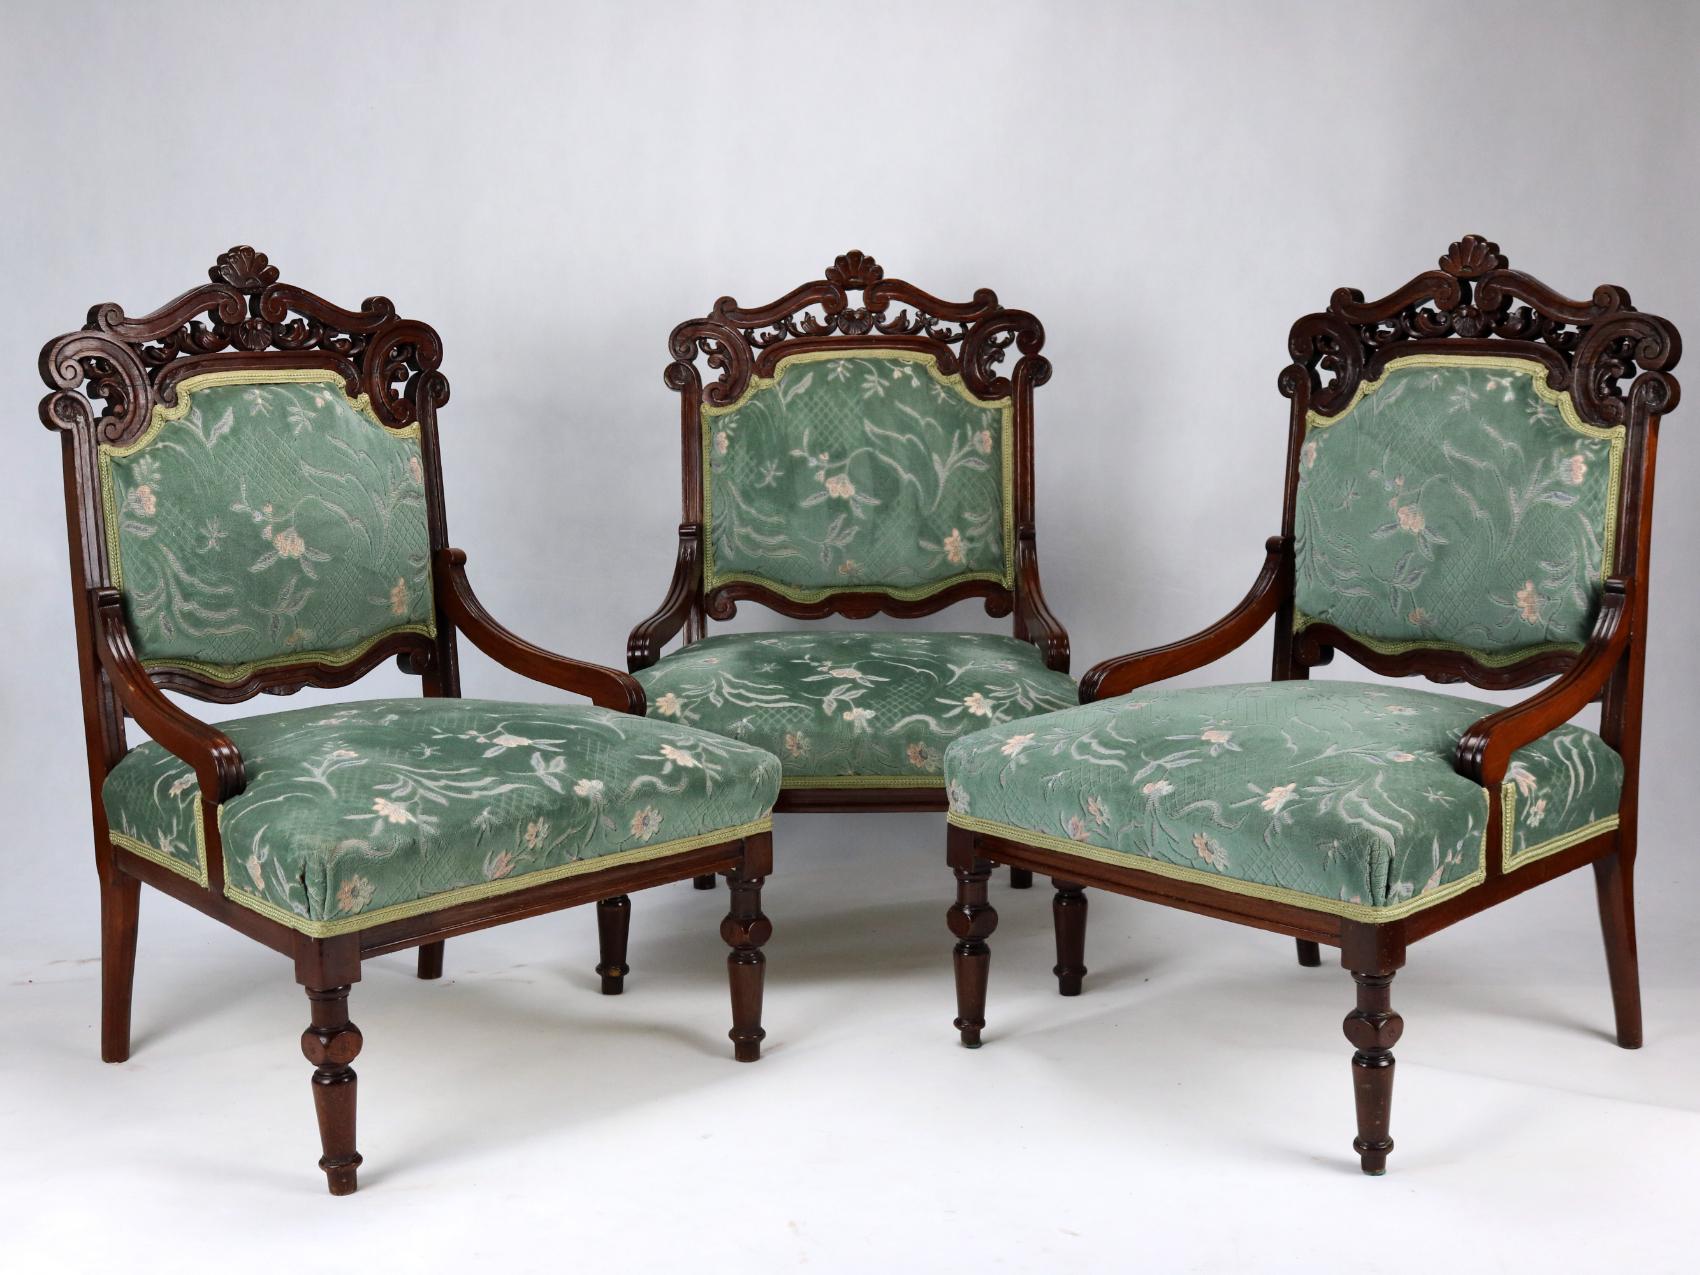 Drei handgeschnitzte Sessel aus Buche, um 1880.